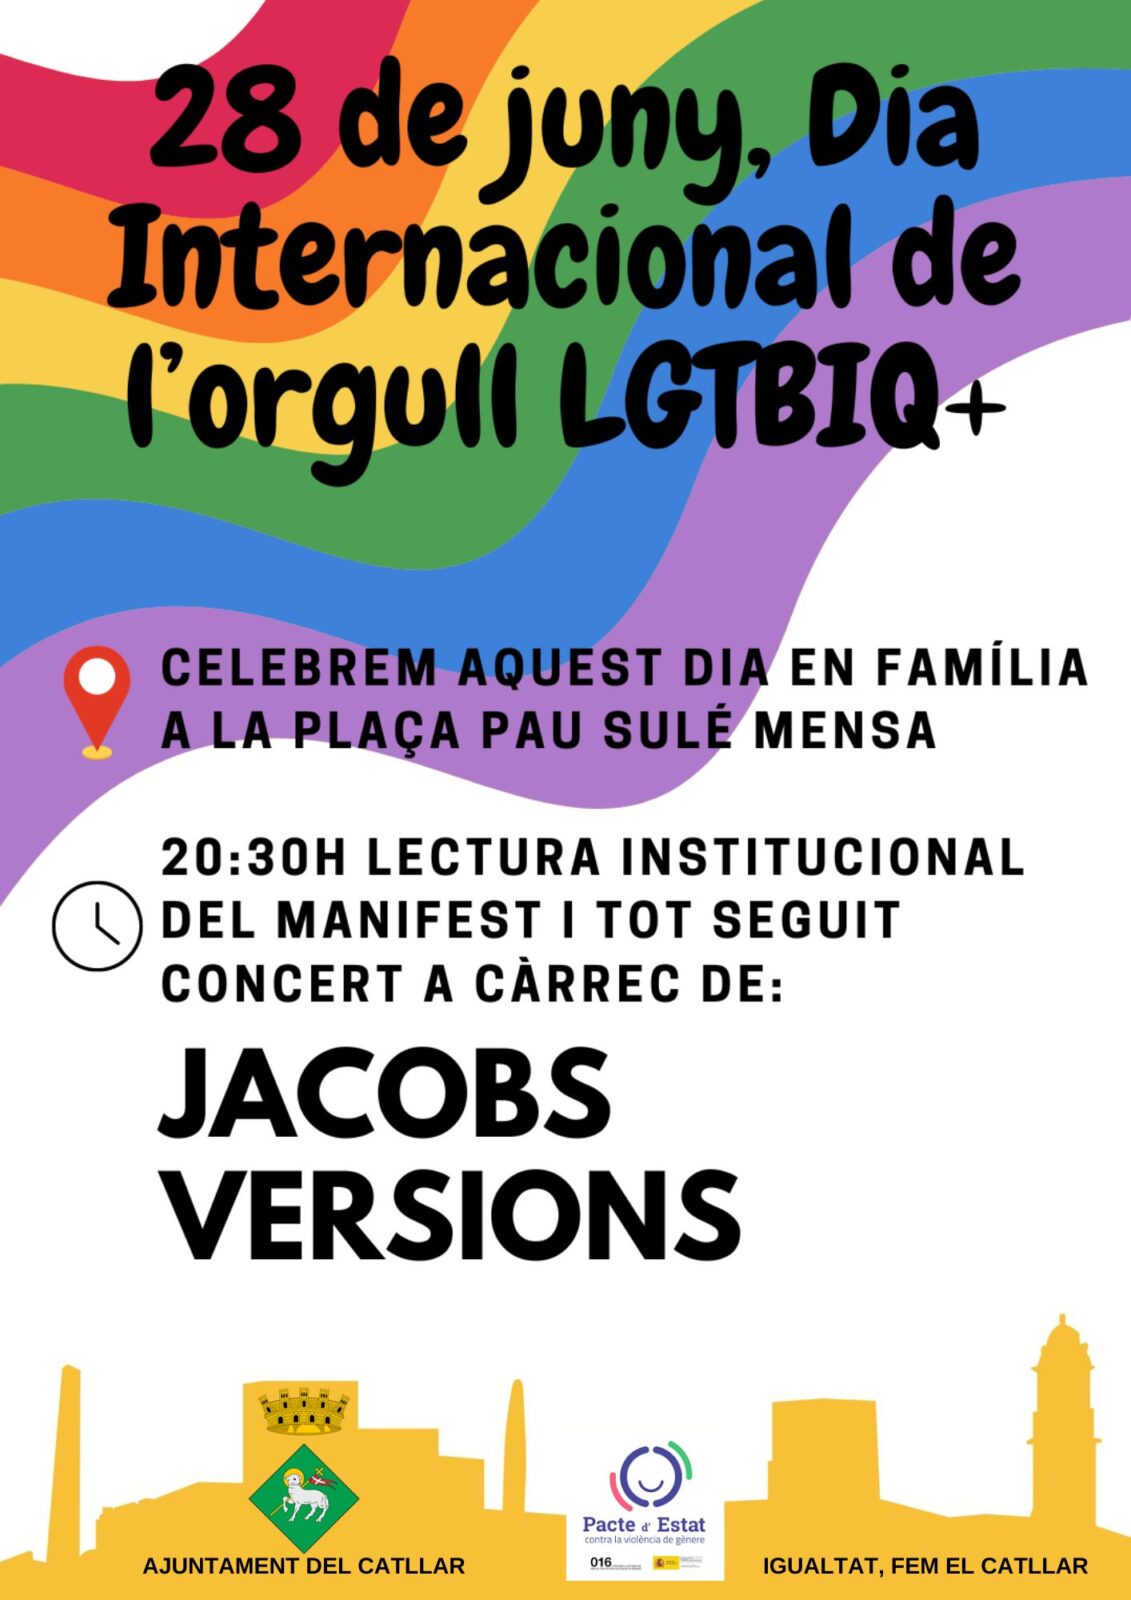 ACTES DEL DIA INTERNACIONAL DE L’ORGULL LGTBIQ+, DIVENDRES 28 DE JUNY